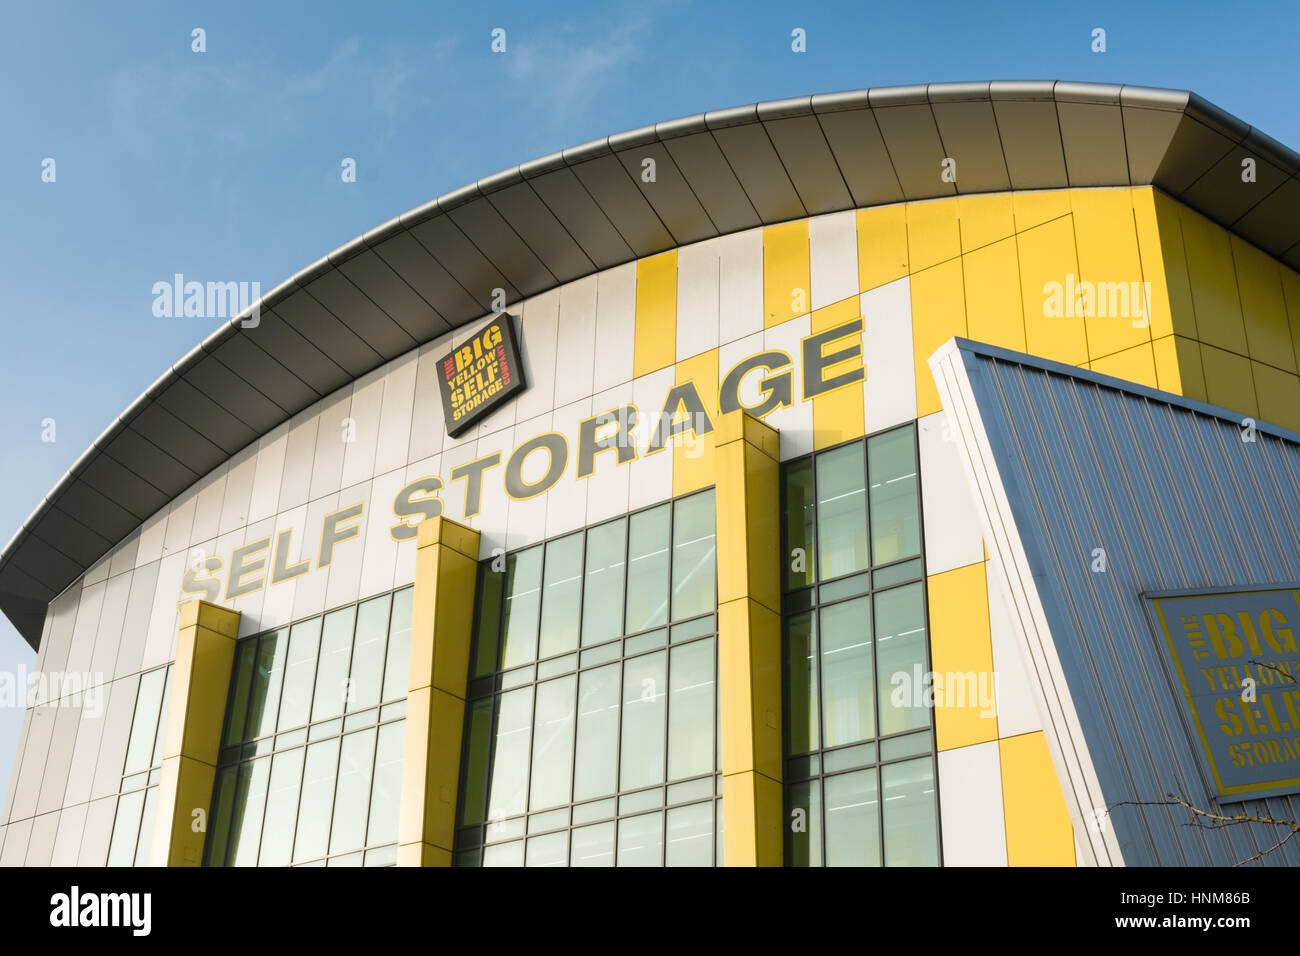 Grande giallo Self Storage, Brentford, London, Regno Unito Foto Stock